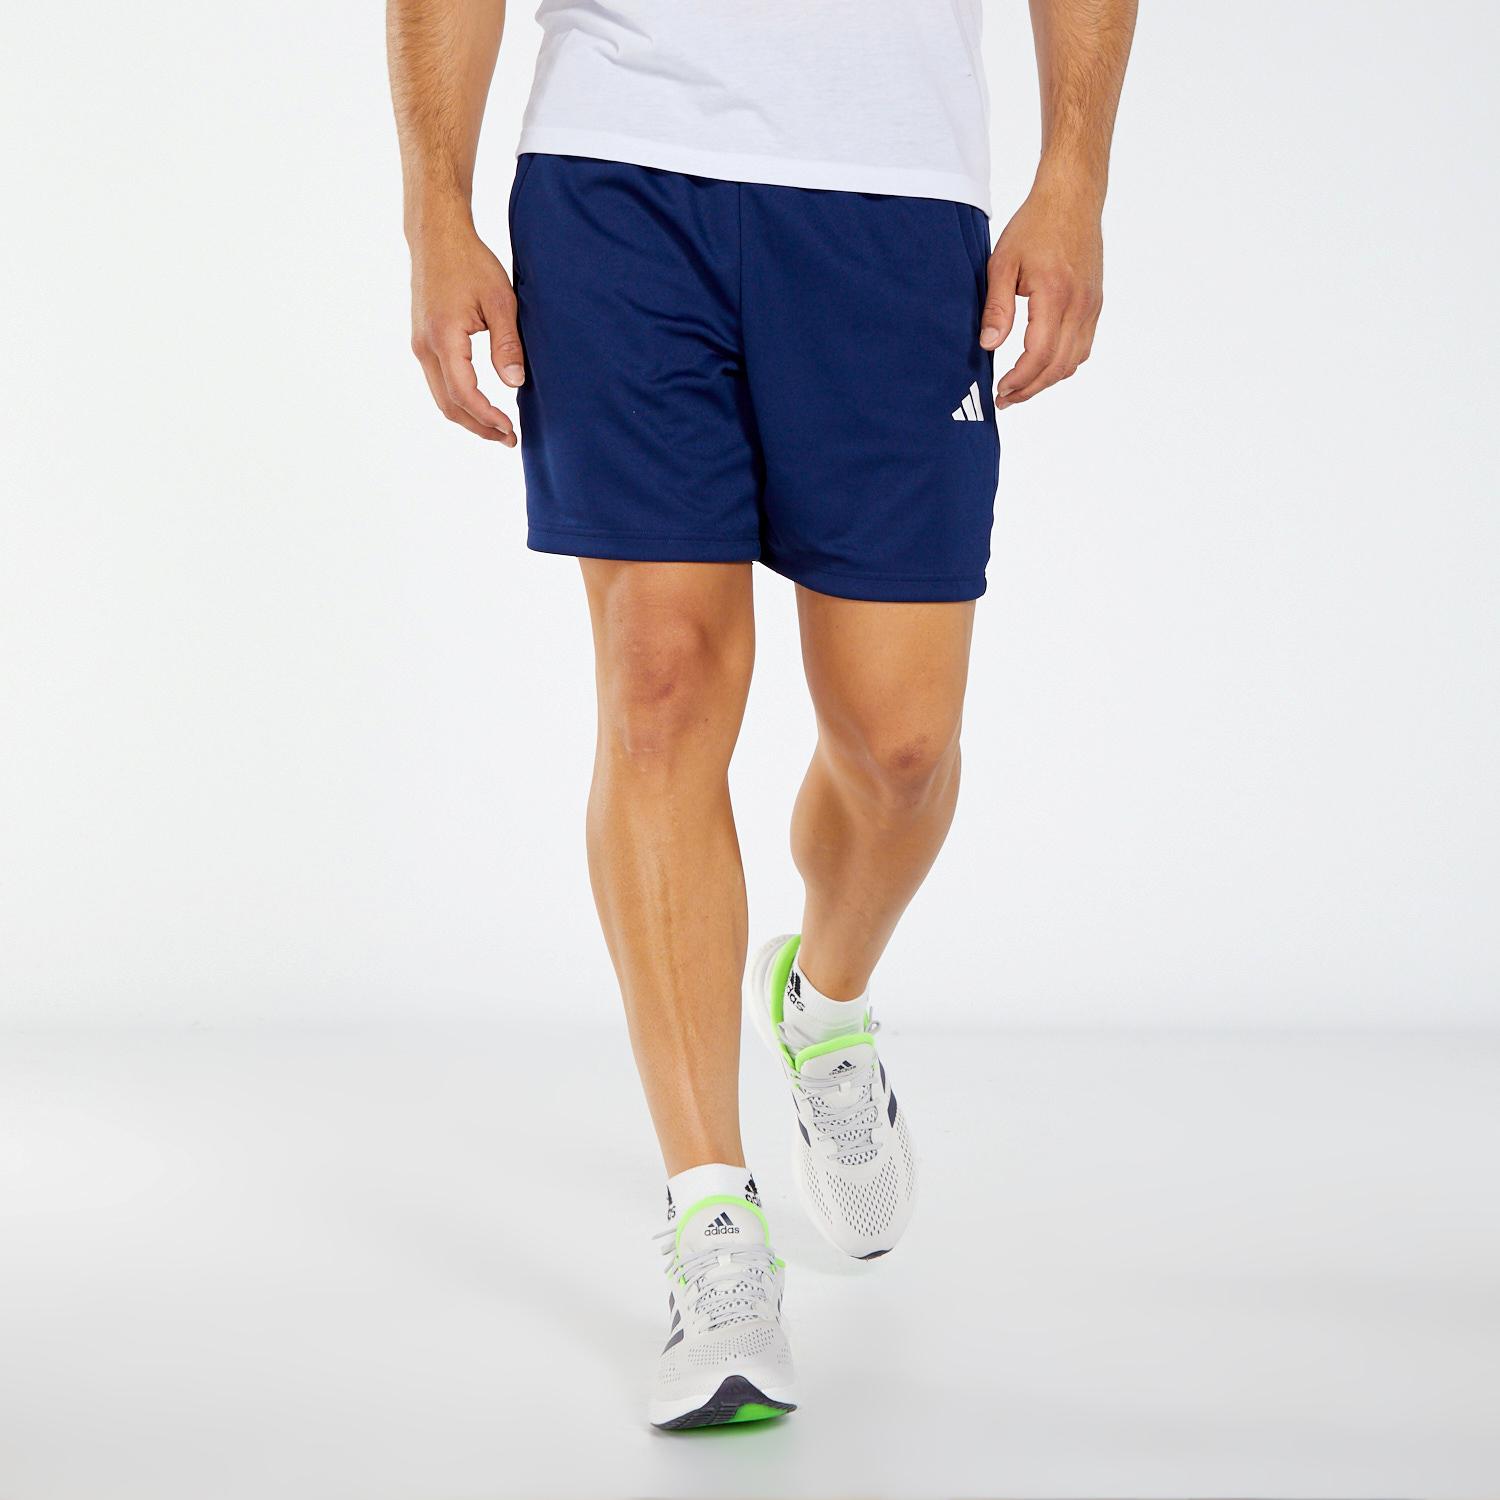 Pantalon corto deporte azul | Sprinter